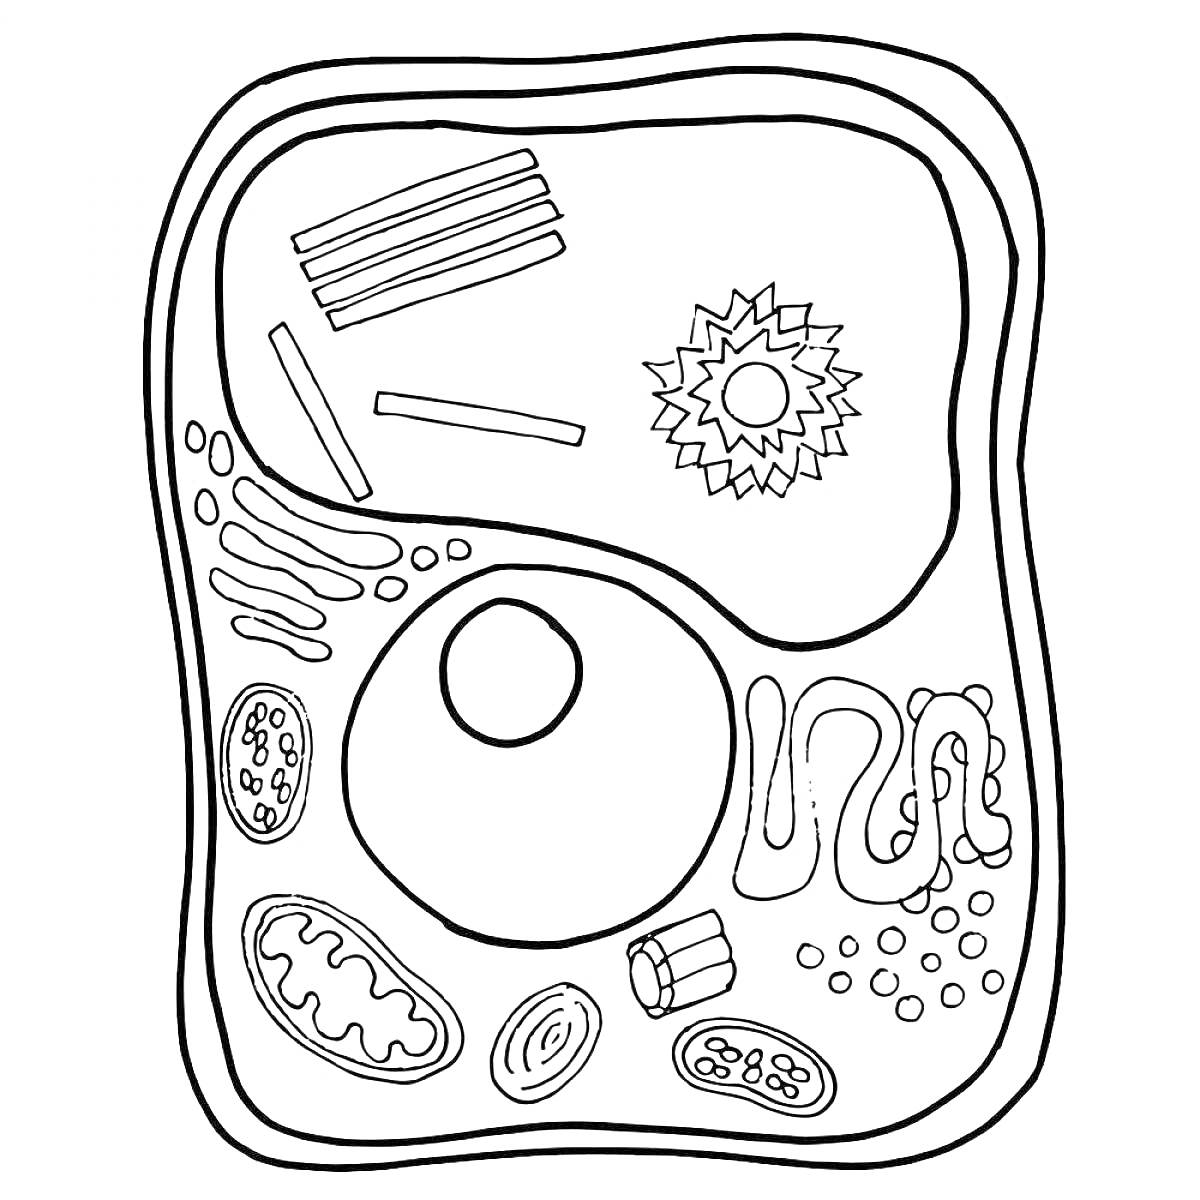 Строение клетки с обозначением всех элементов (ядро, митохондрии, рибосомы, эндоплазматическая сеть, аппарат Гольджи, лизосомы, цитоплазма, клеточная мембрана)